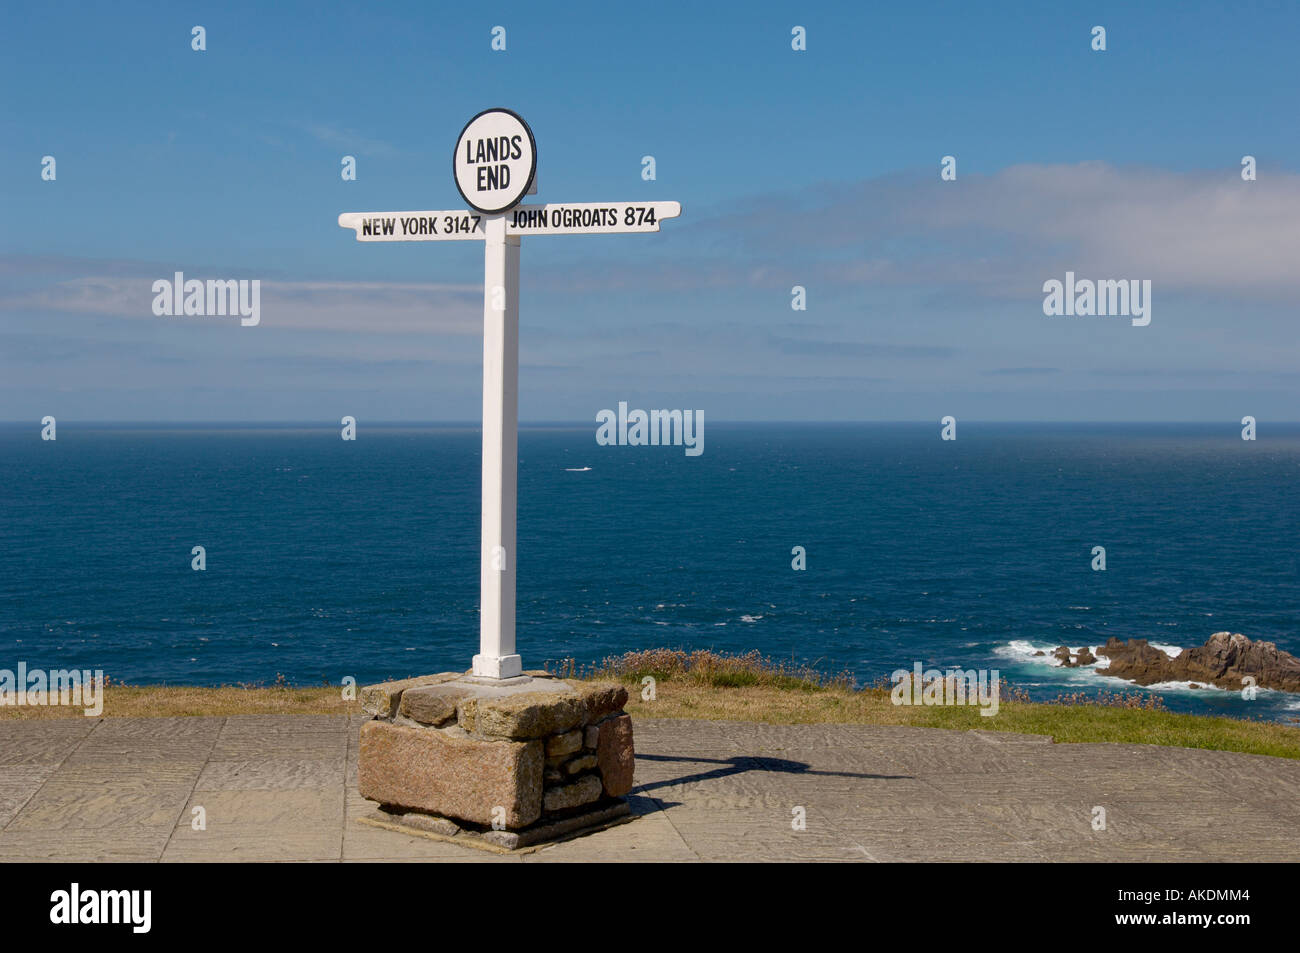 Signe de fin de terre vu sur la gauche avec l'océan Atlantique disparaissant à l'horizon. ROYAUME-UNI Banque D'Images